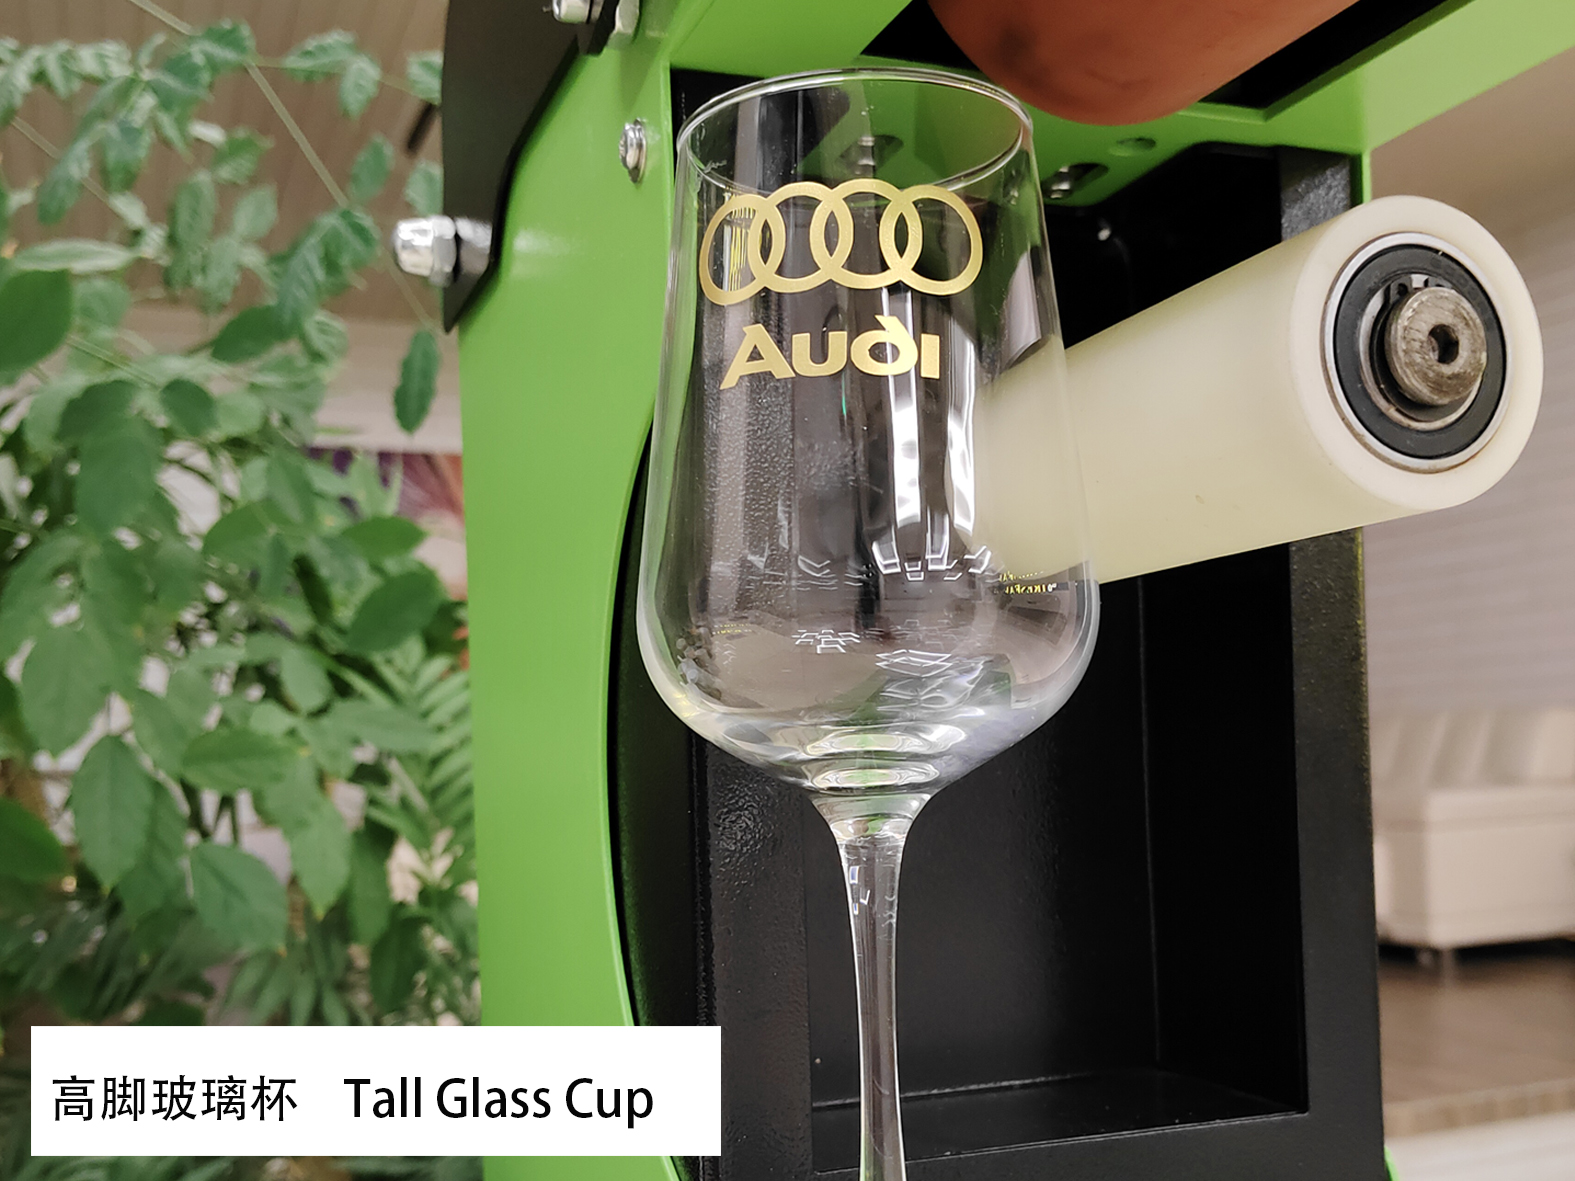 लंबे ग्लास कप के लिए हीट ट्रांसफर डिकल फ़ॉइल (HSF-GD811) के साथ विशेष शानदार गोल्डन लोगो और लेबल